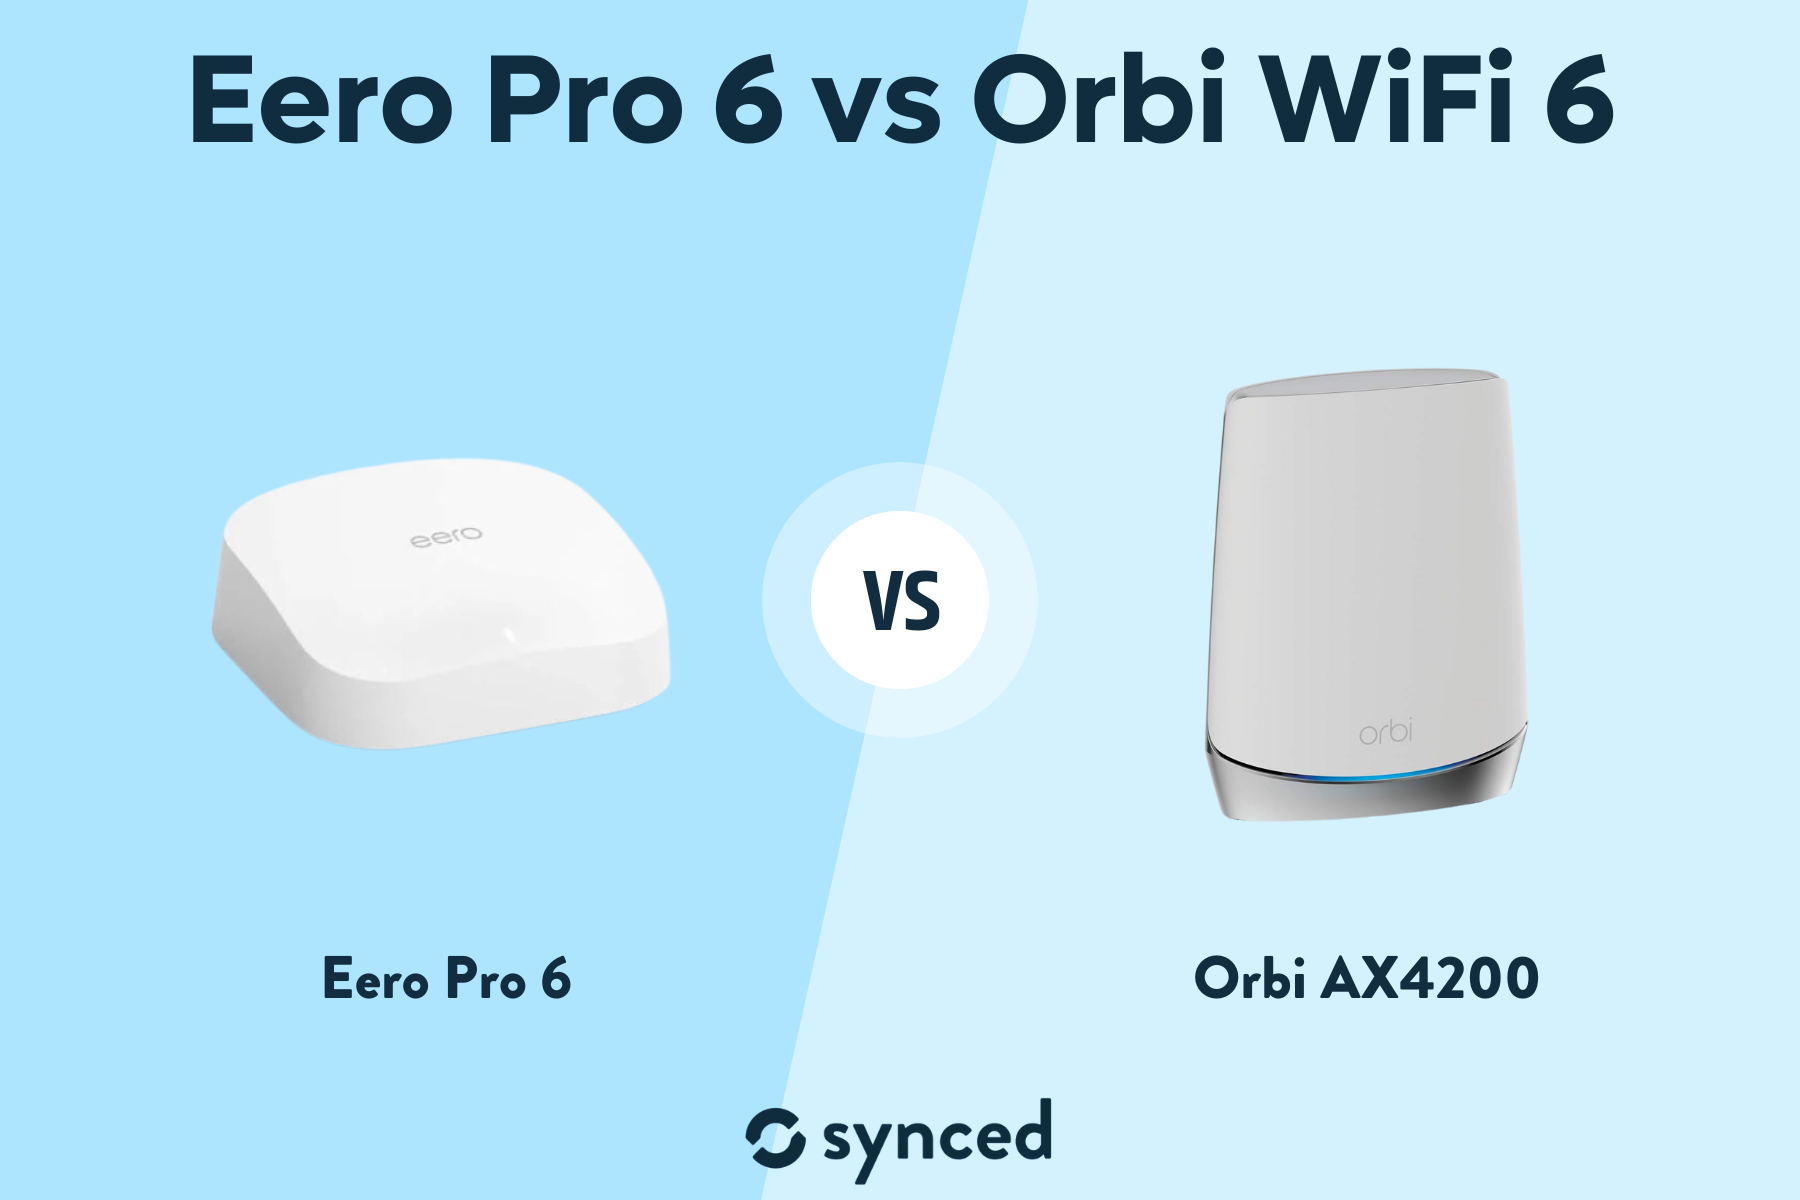 Eero Pro 6 vs Orbi WiFi 6